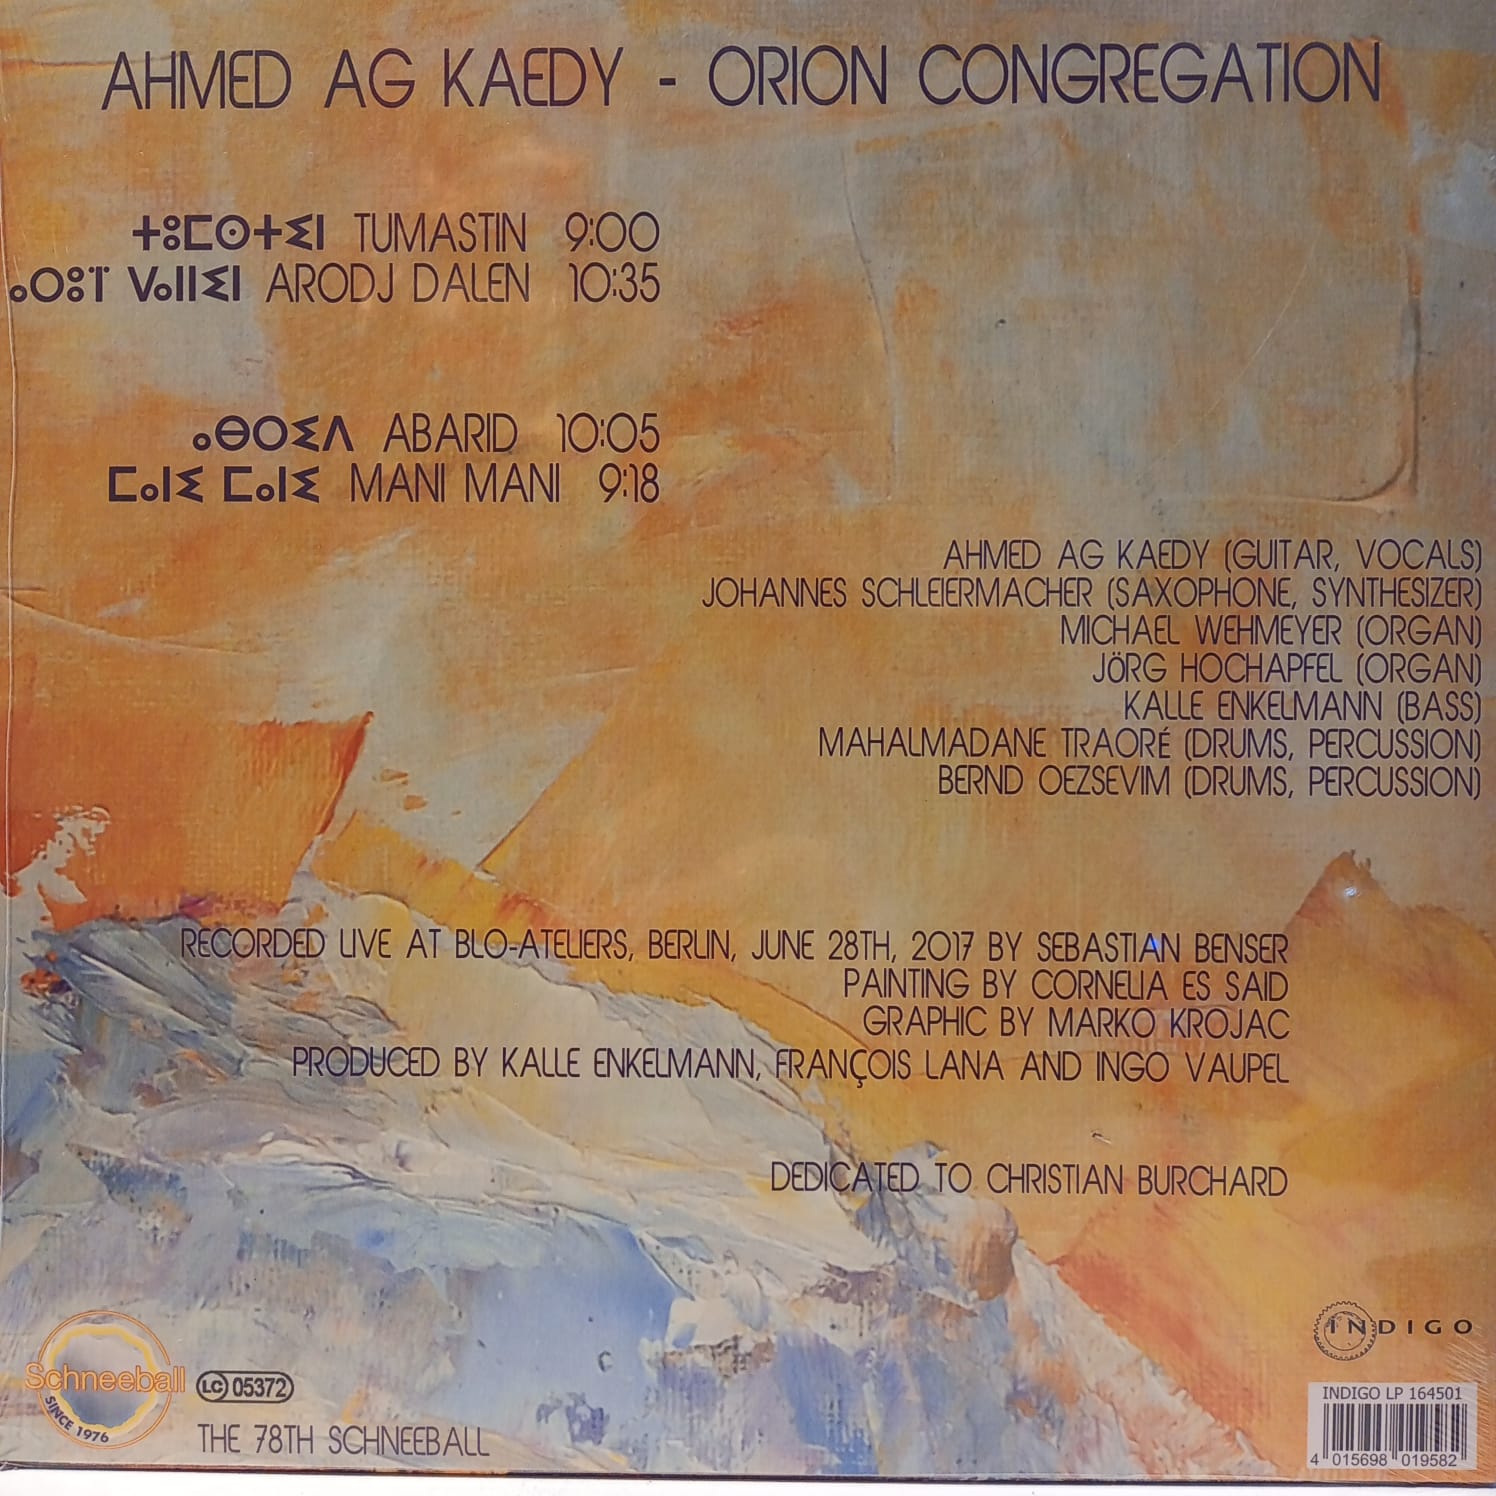 AHMED-AG-KAEDY-ORION-CONGREGATION-ARKA